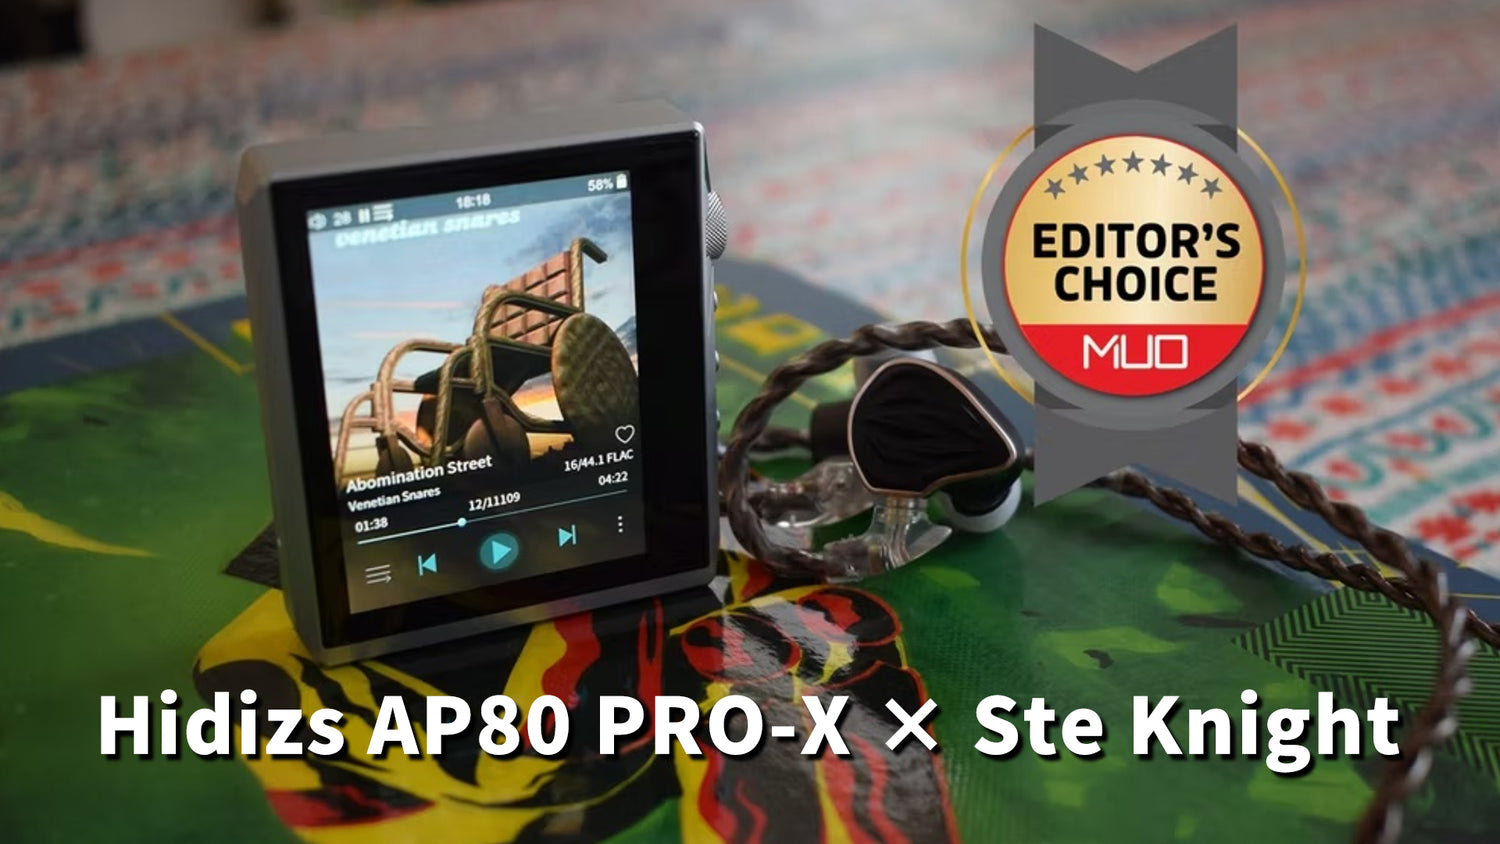 Hidizs AP80 PRO-X Review - Ste Knight